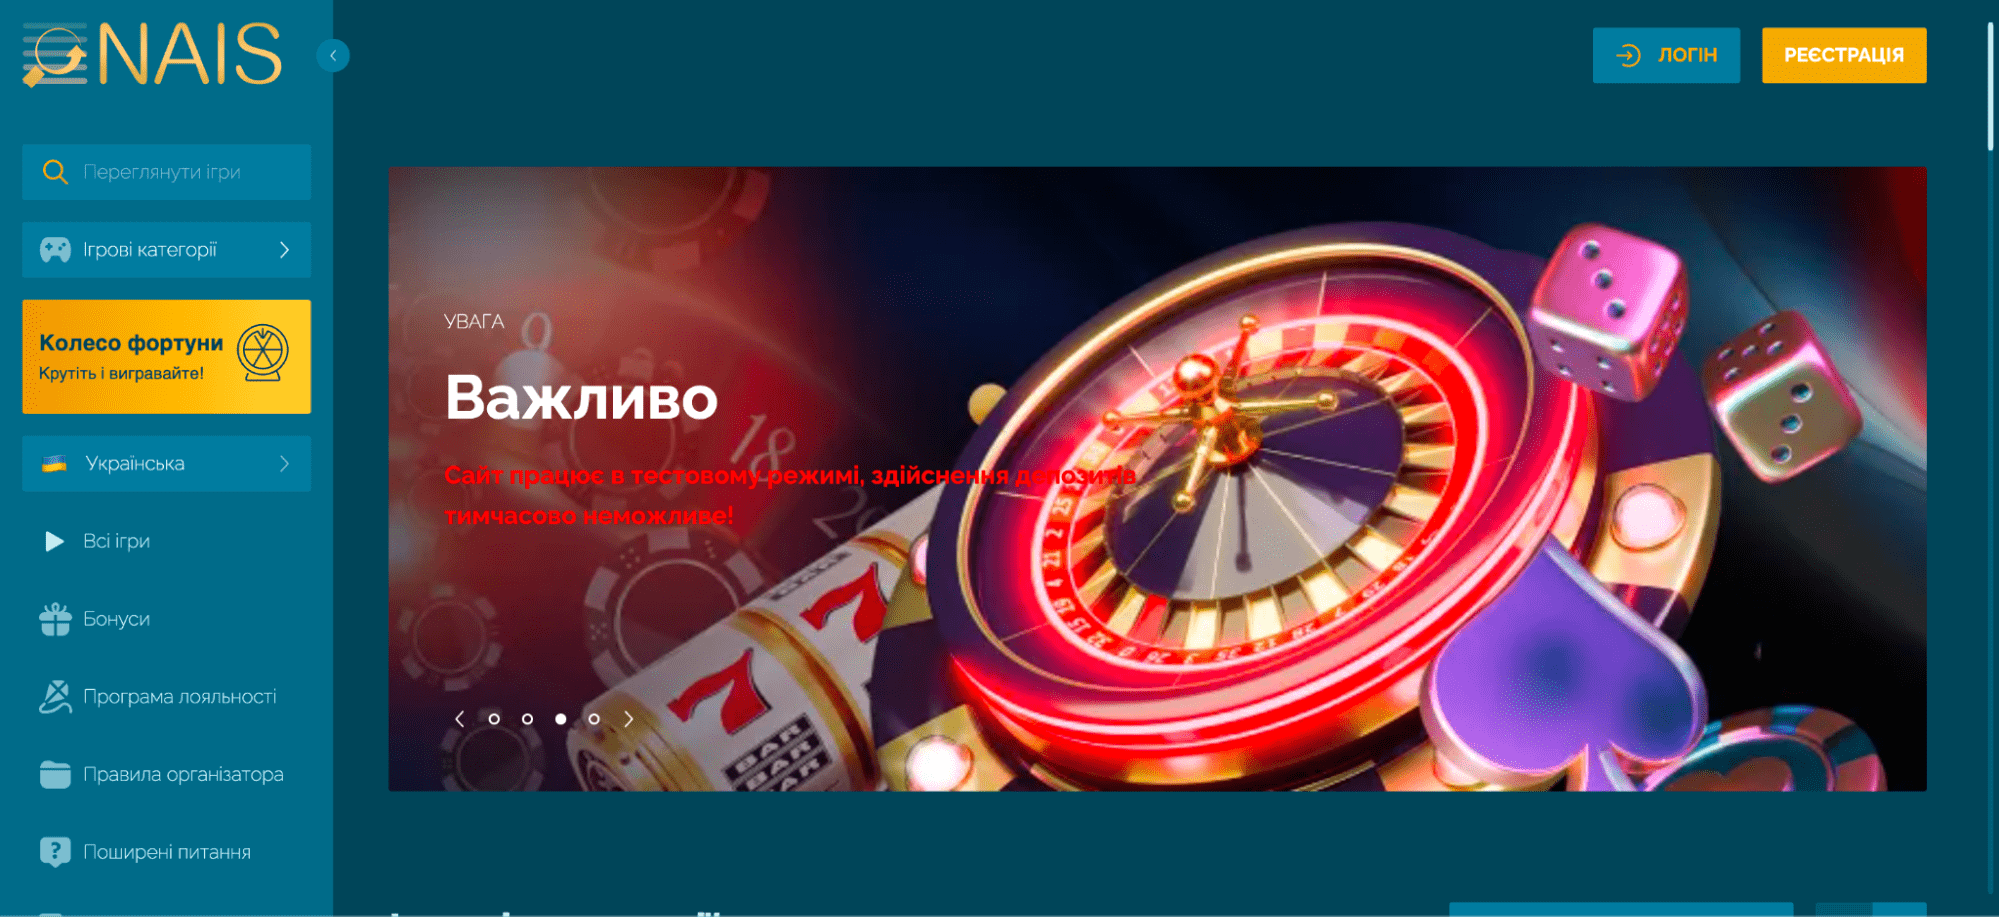 главная страница сайта казино Nais.ua